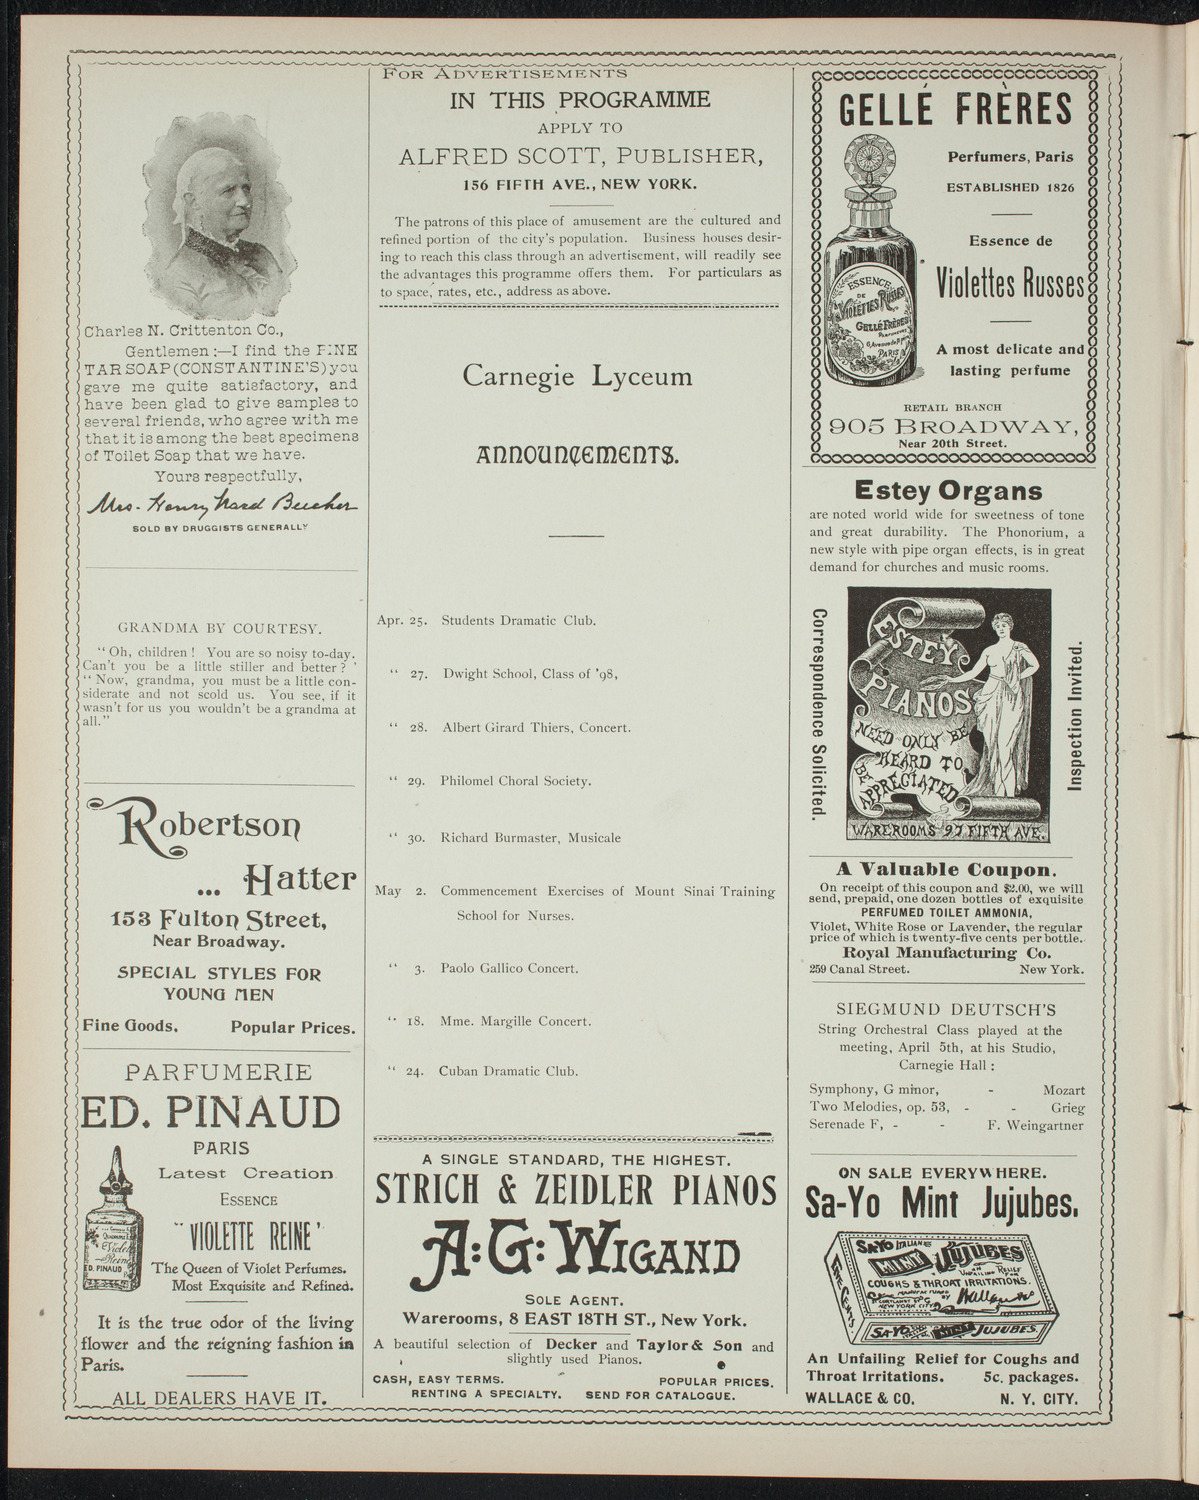 Cercle Choral et Dramatique Francais "La Cigale", April 25, 1898, program page 2